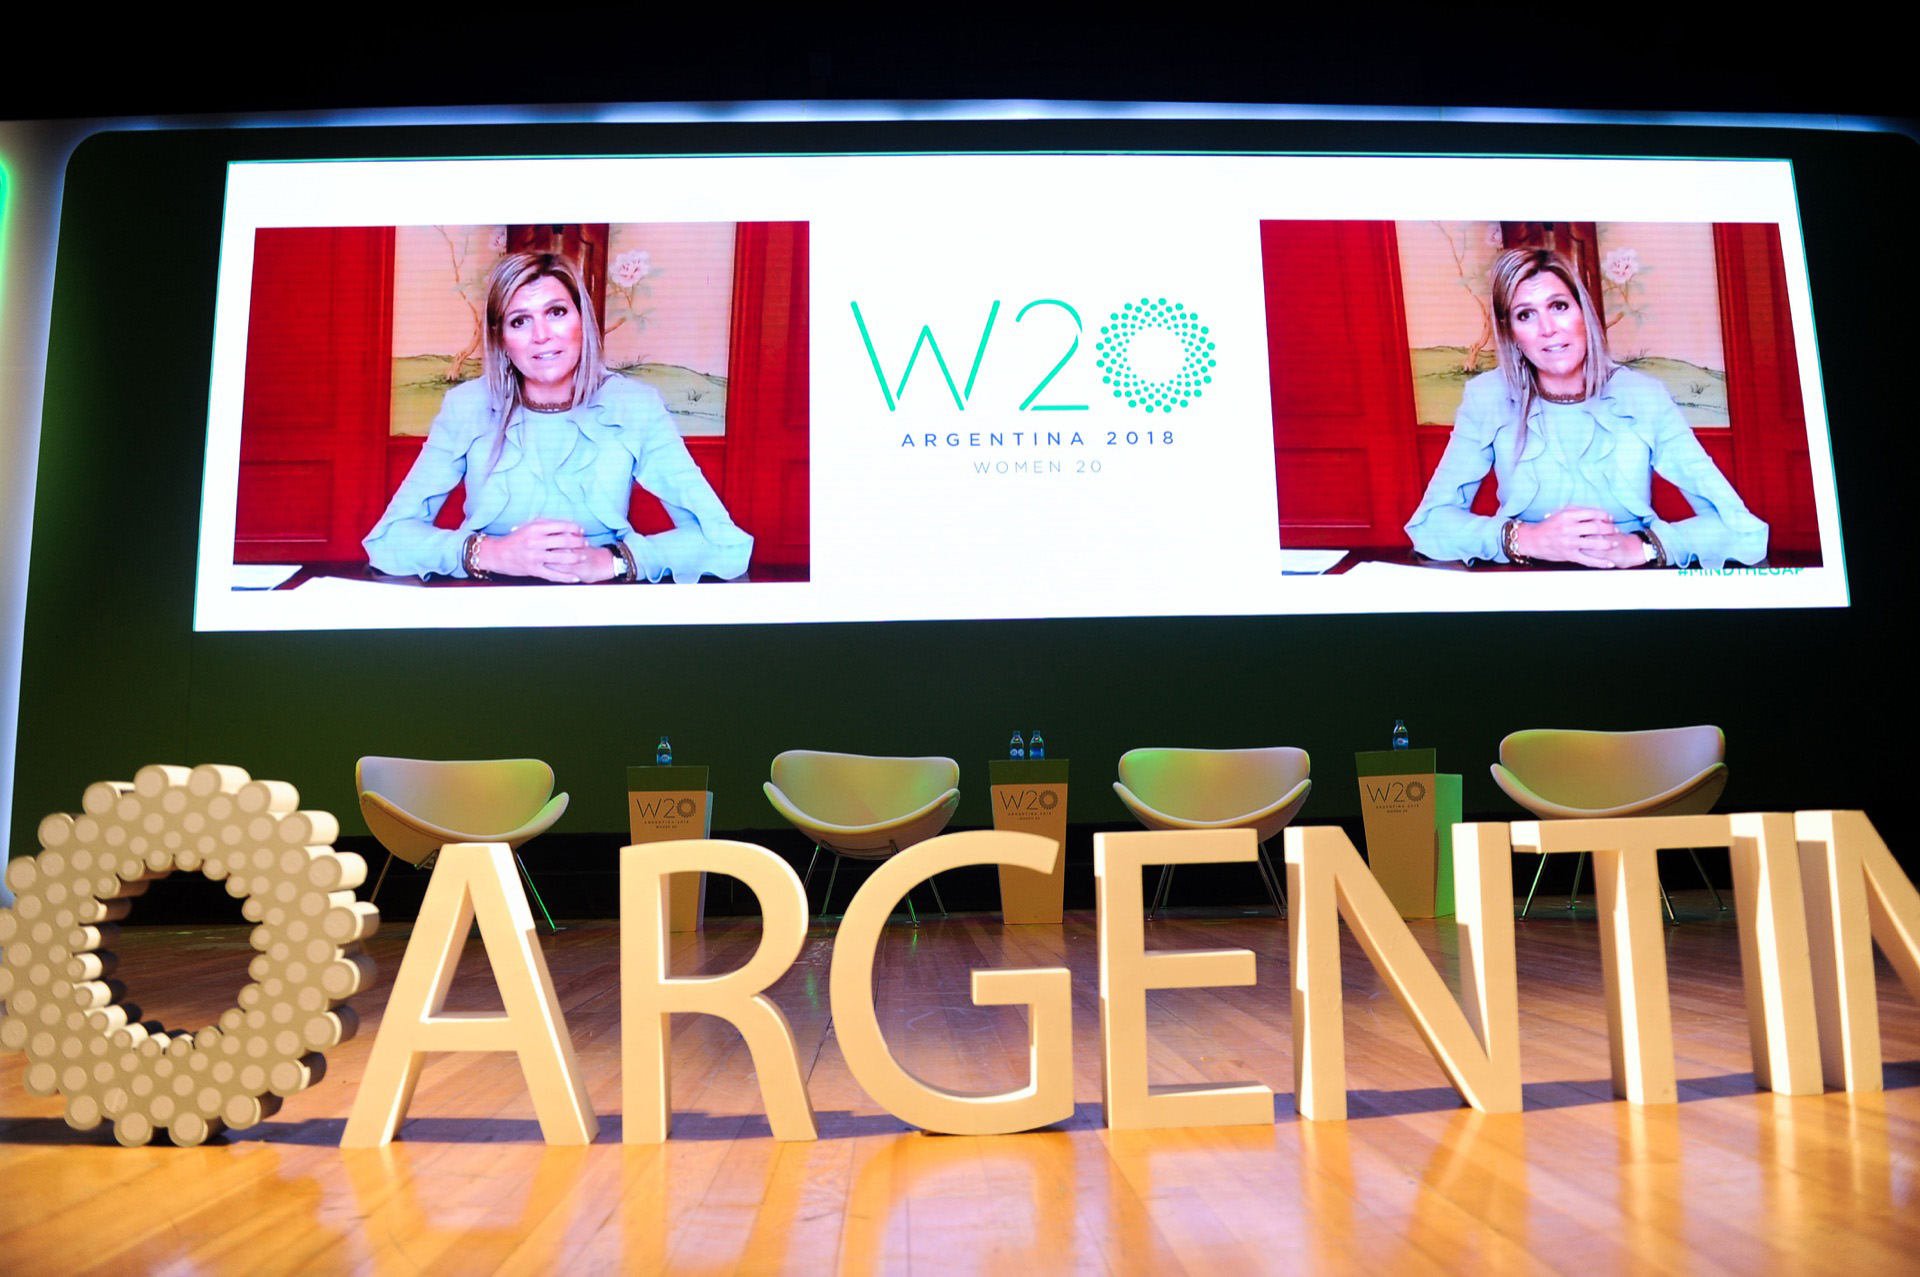 En su videoconferencia en el W20 celebrado en Buenos Aires.